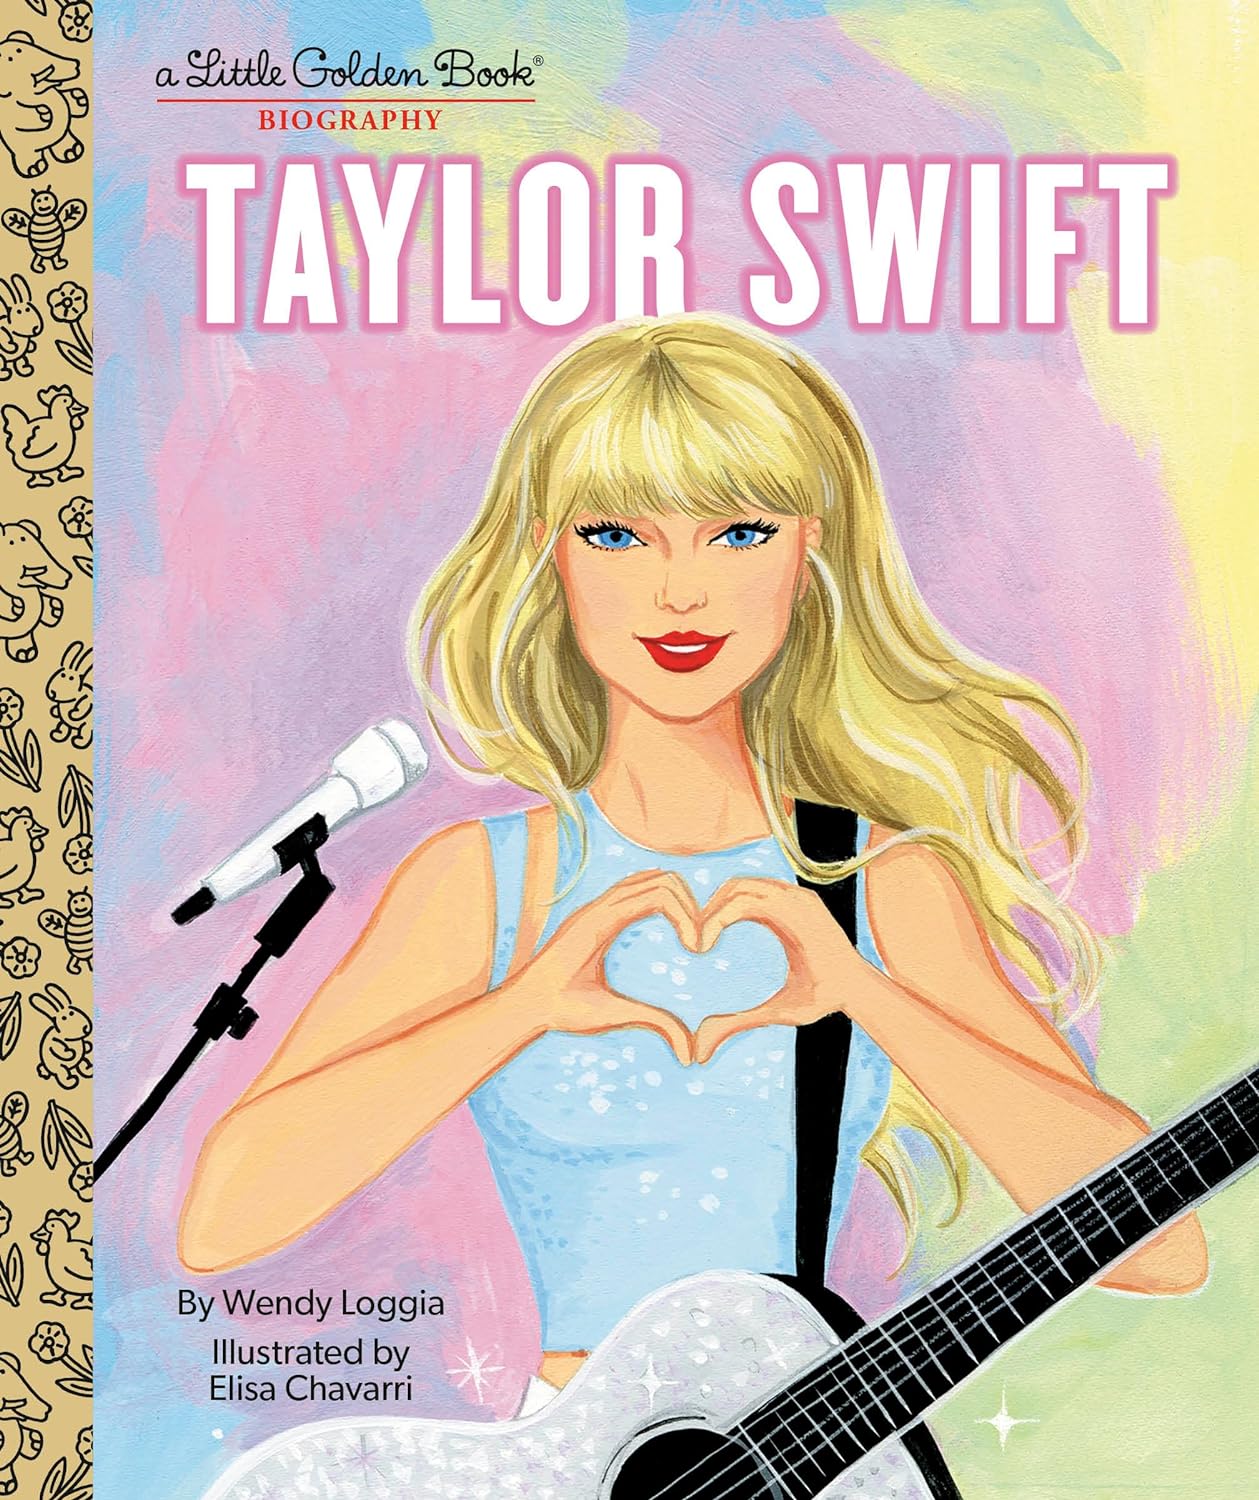 A Little Golden Book Biography: Taylor Swift